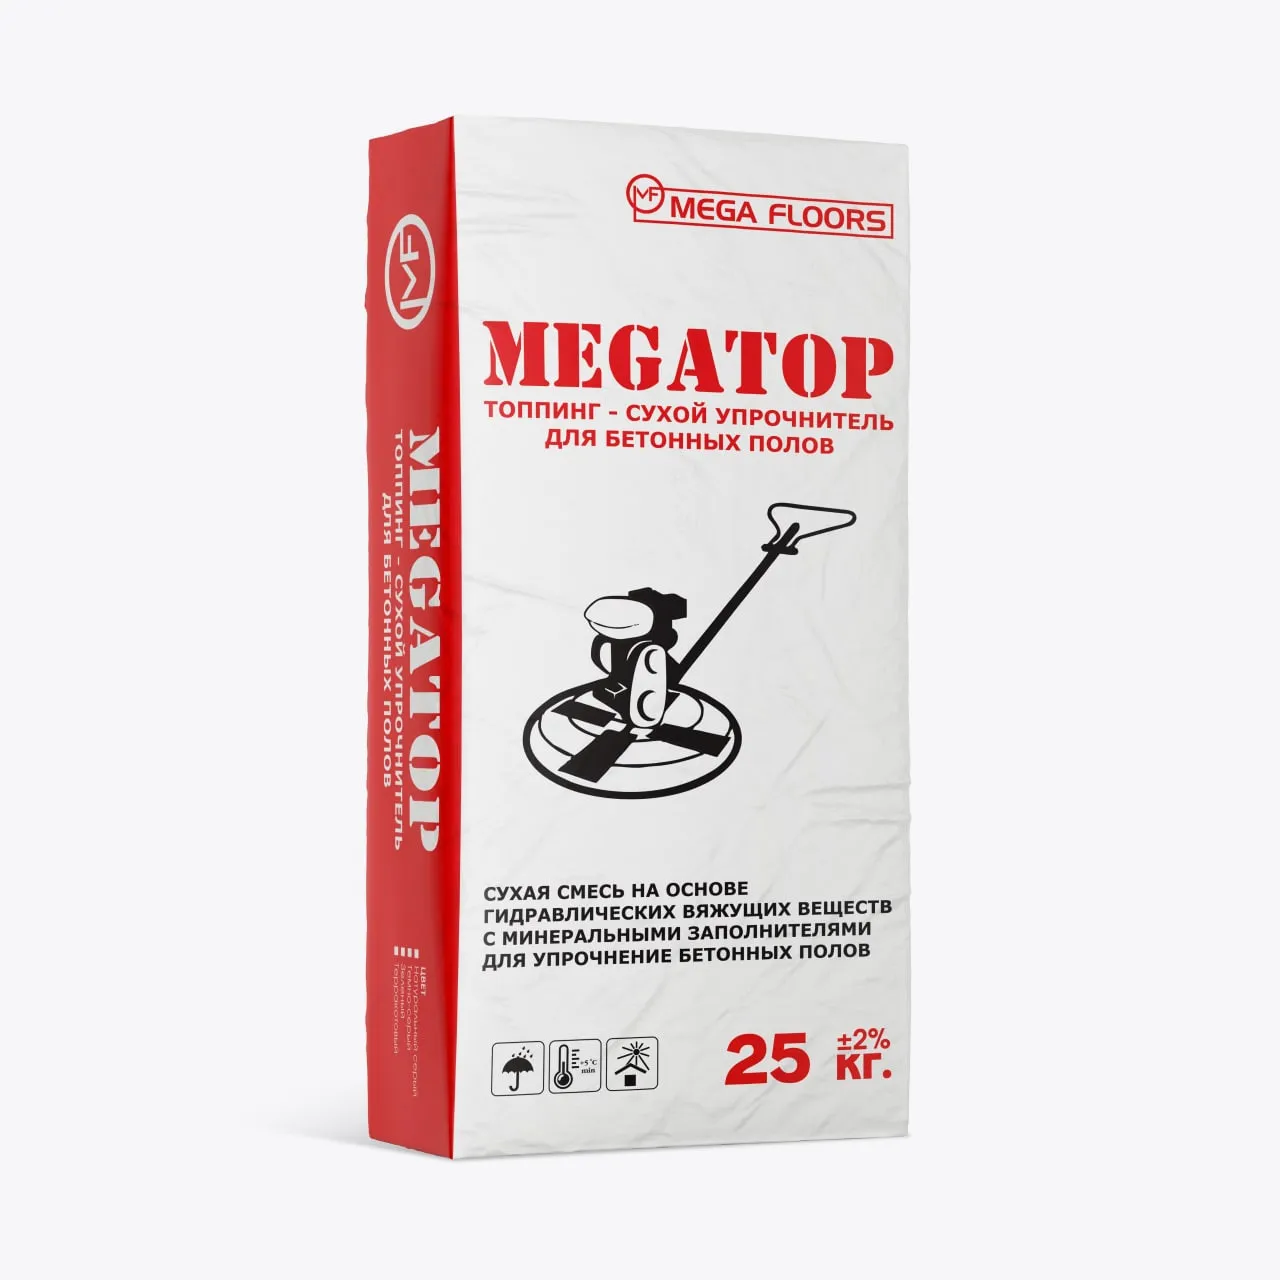 MEGATOP - сухой упрочнитель для бетонных промышленных полов#1